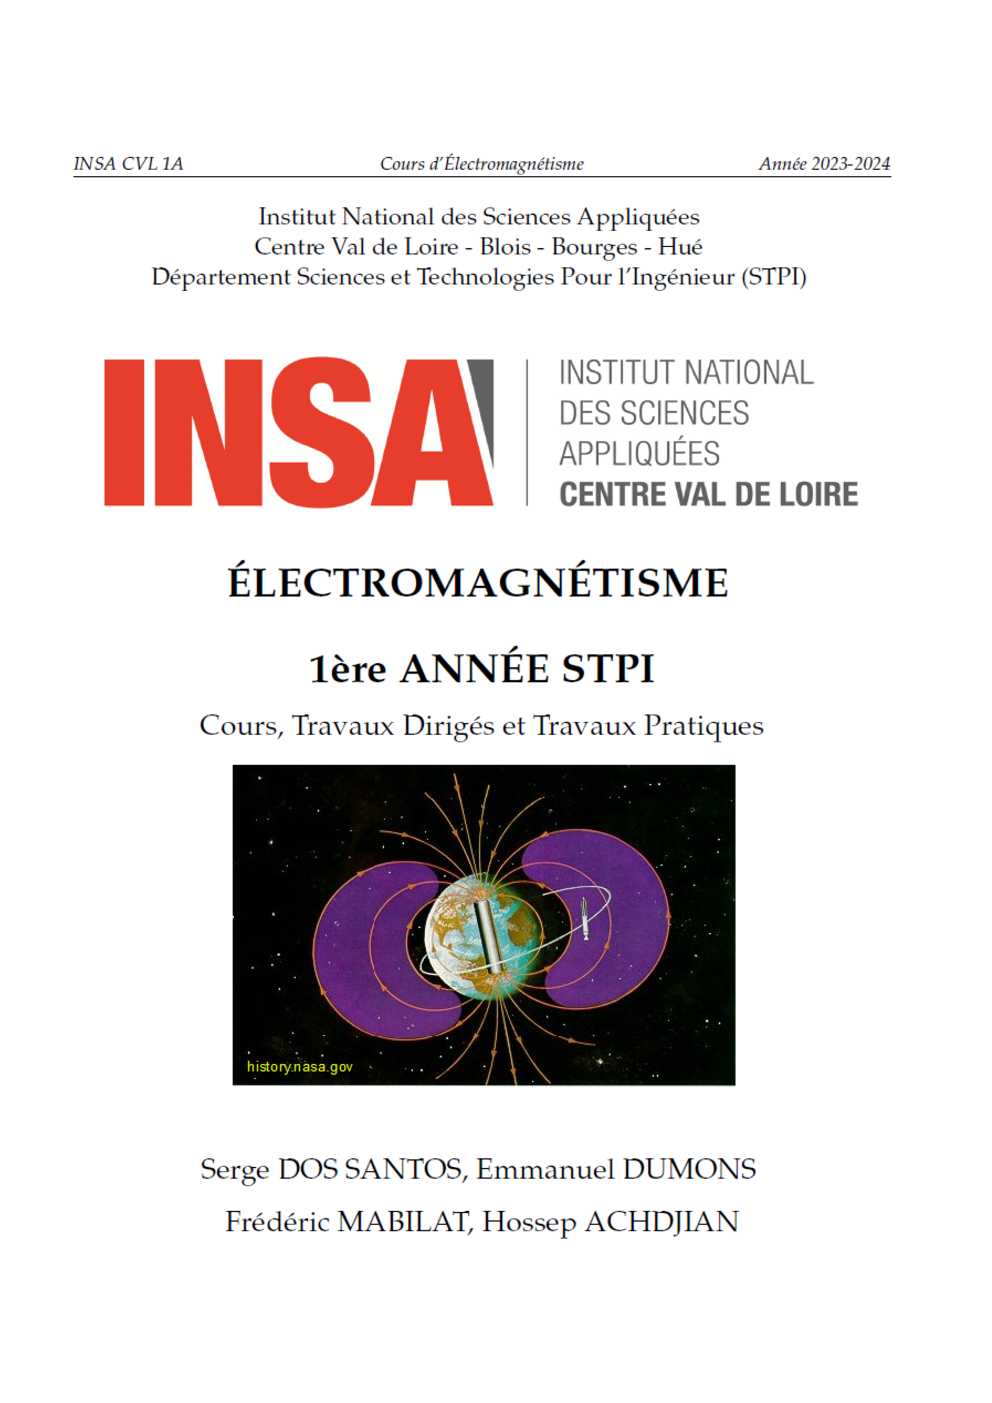 Polycopié Cours Electromagnétisme Serge Dos Santos INSA Centre Val de Loire 2023-2024